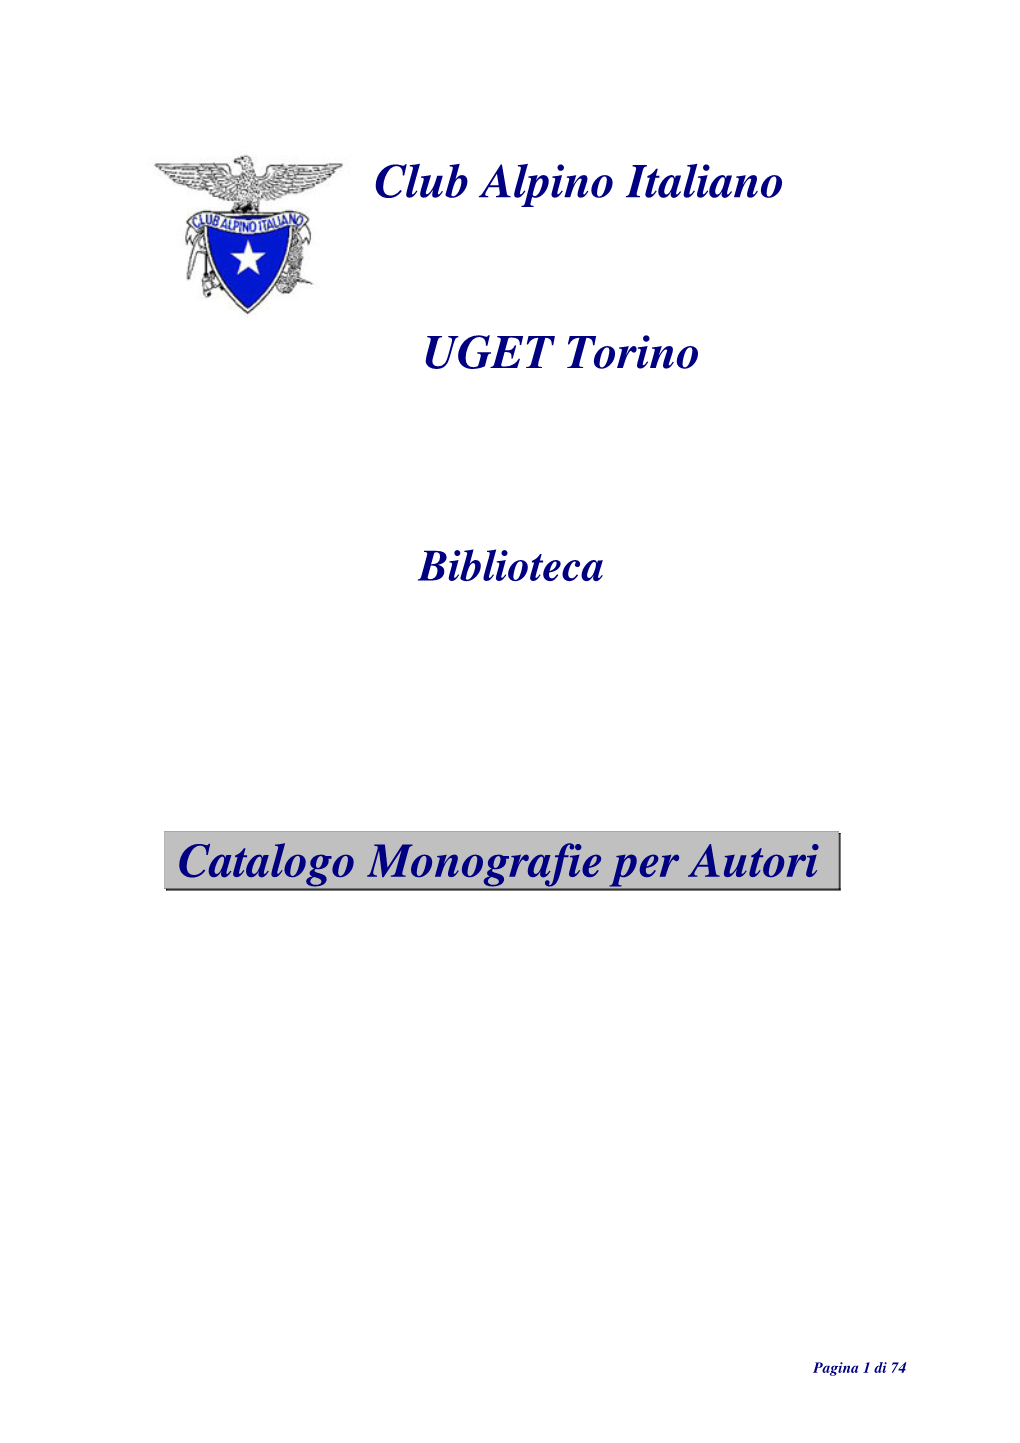 Club Alpino Italiano Catalogo Monografie Per Autori UGET Torino